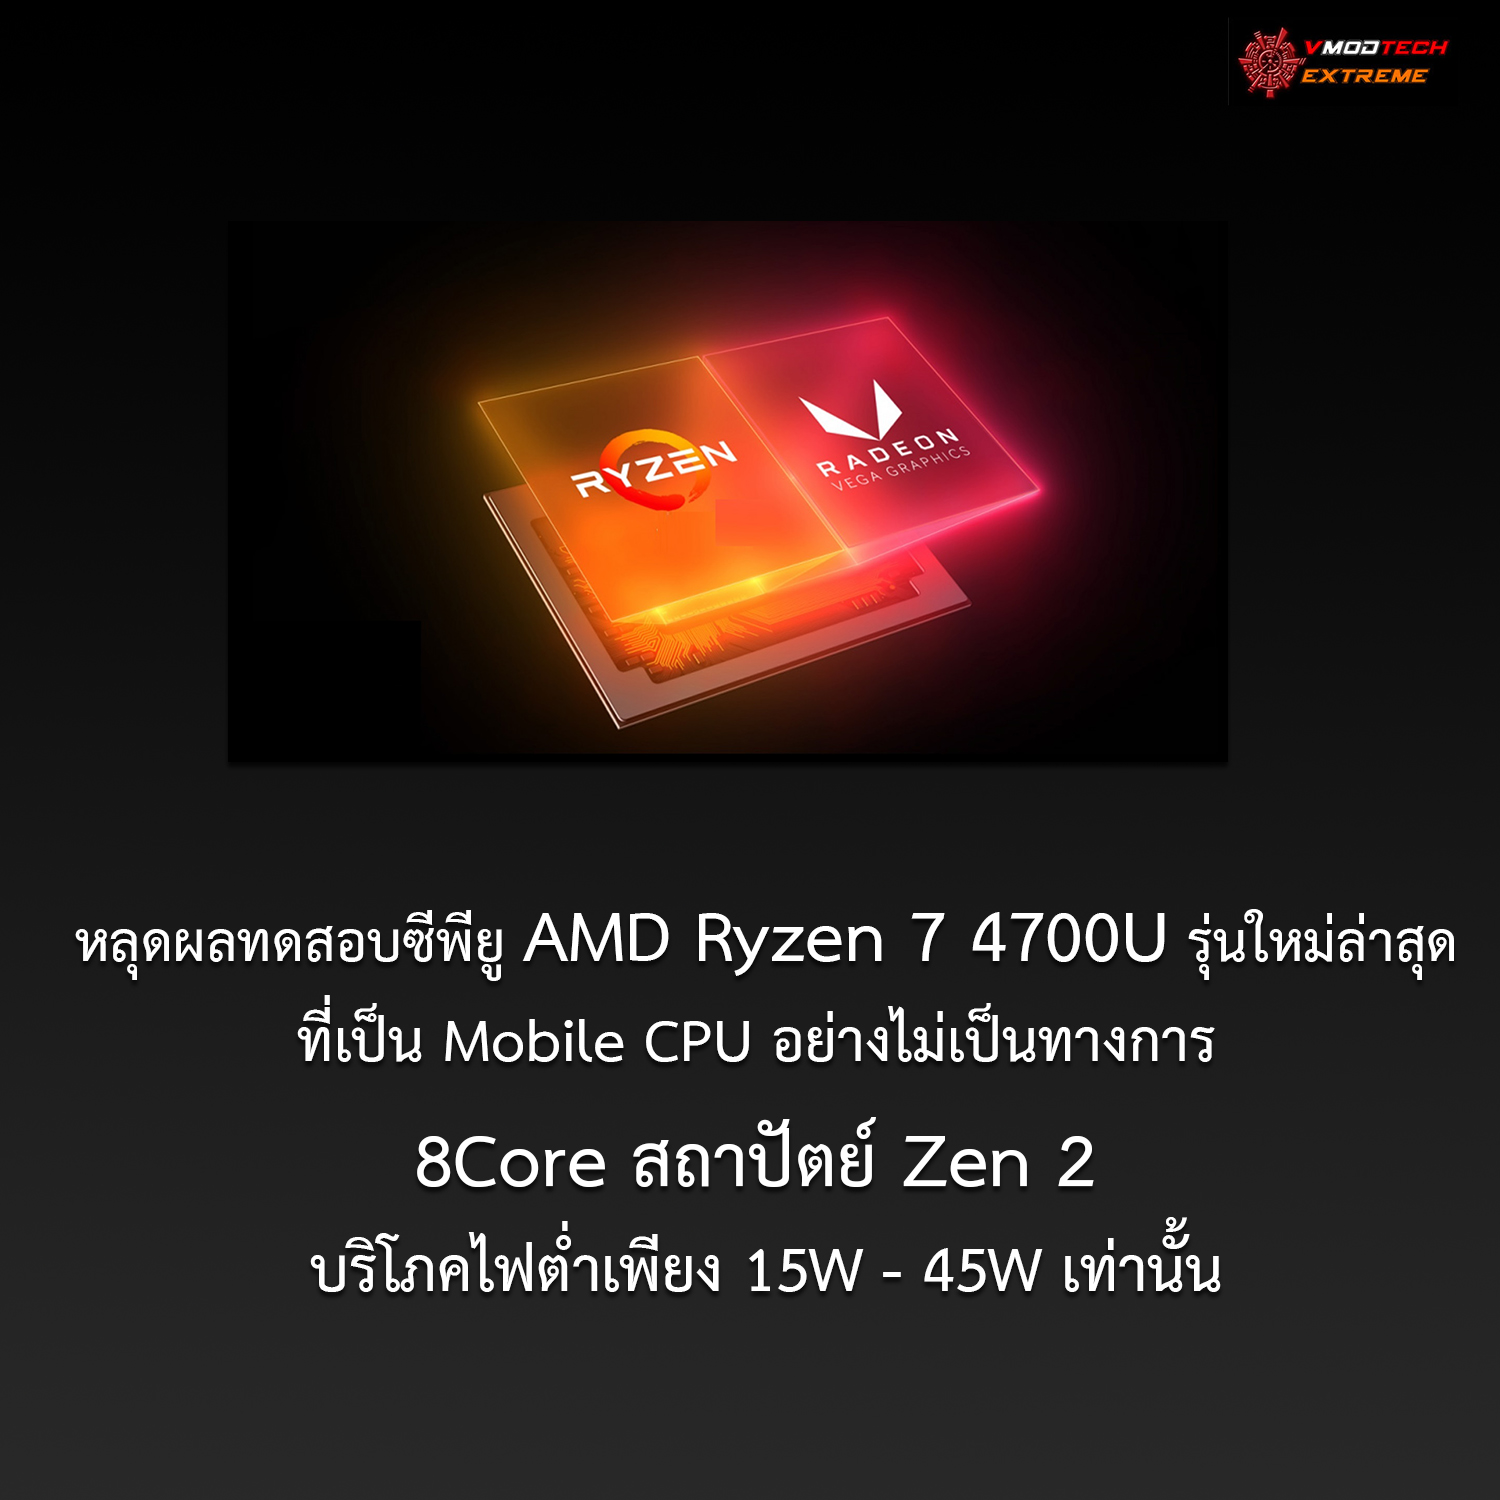 amd ryzen 7 4700u หลุดผลทดสอบซีพียู AMD Ryzen 7 4700U รุ่นใหม่ล่าสุดที่เป็น Mobile CPU อย่างไม่เป็นทางการ